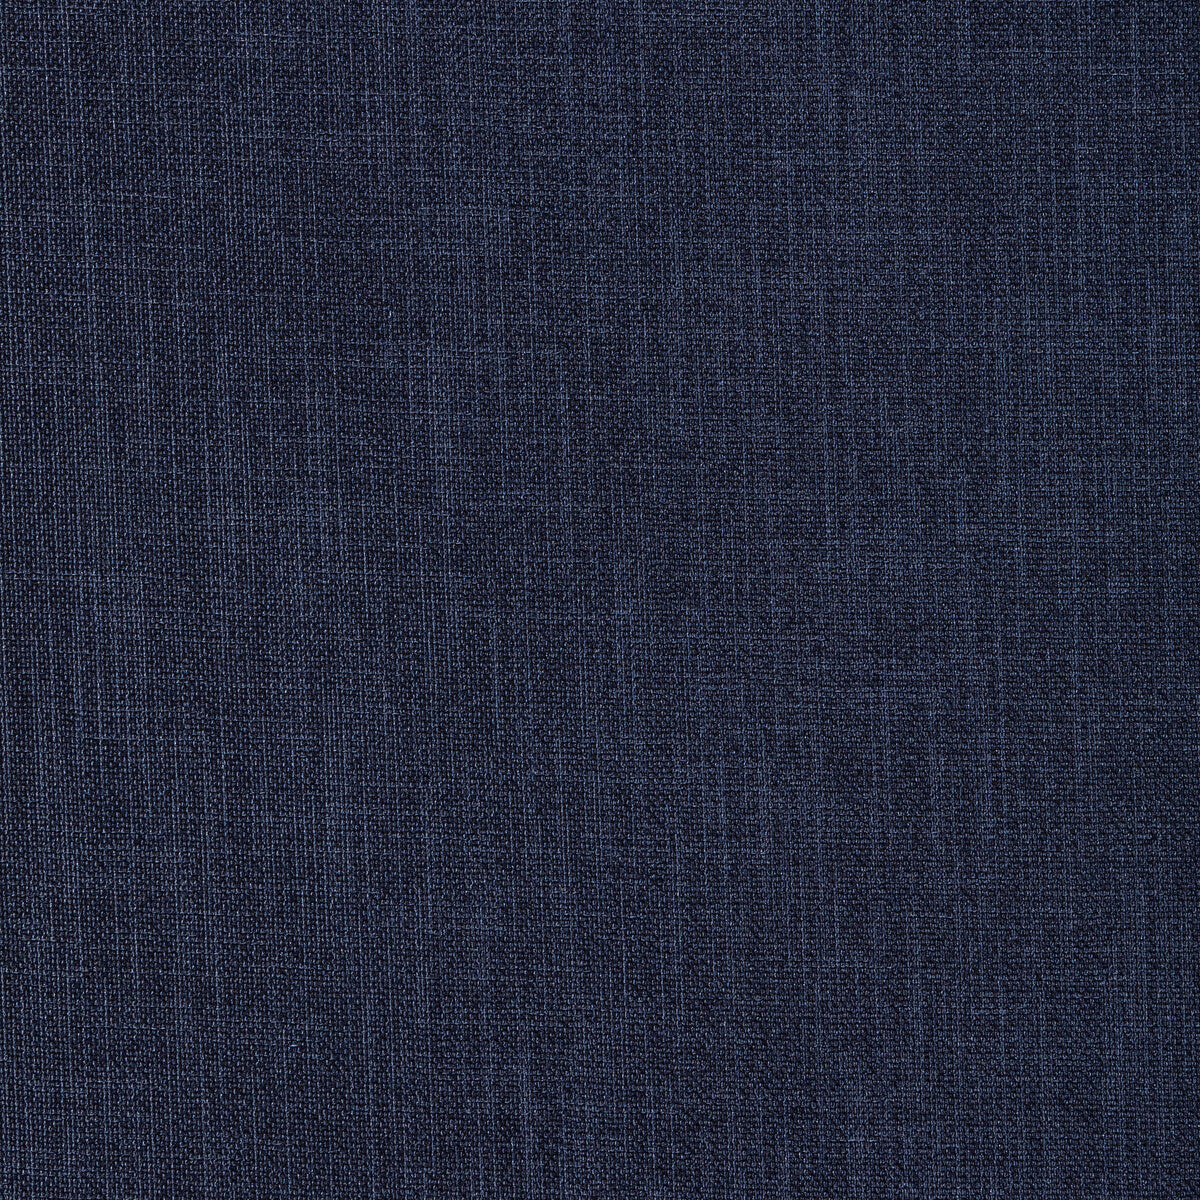 Kravet Basics fabric in 33120-550 color - pattern 33120.550.0 - by Kravet Basics